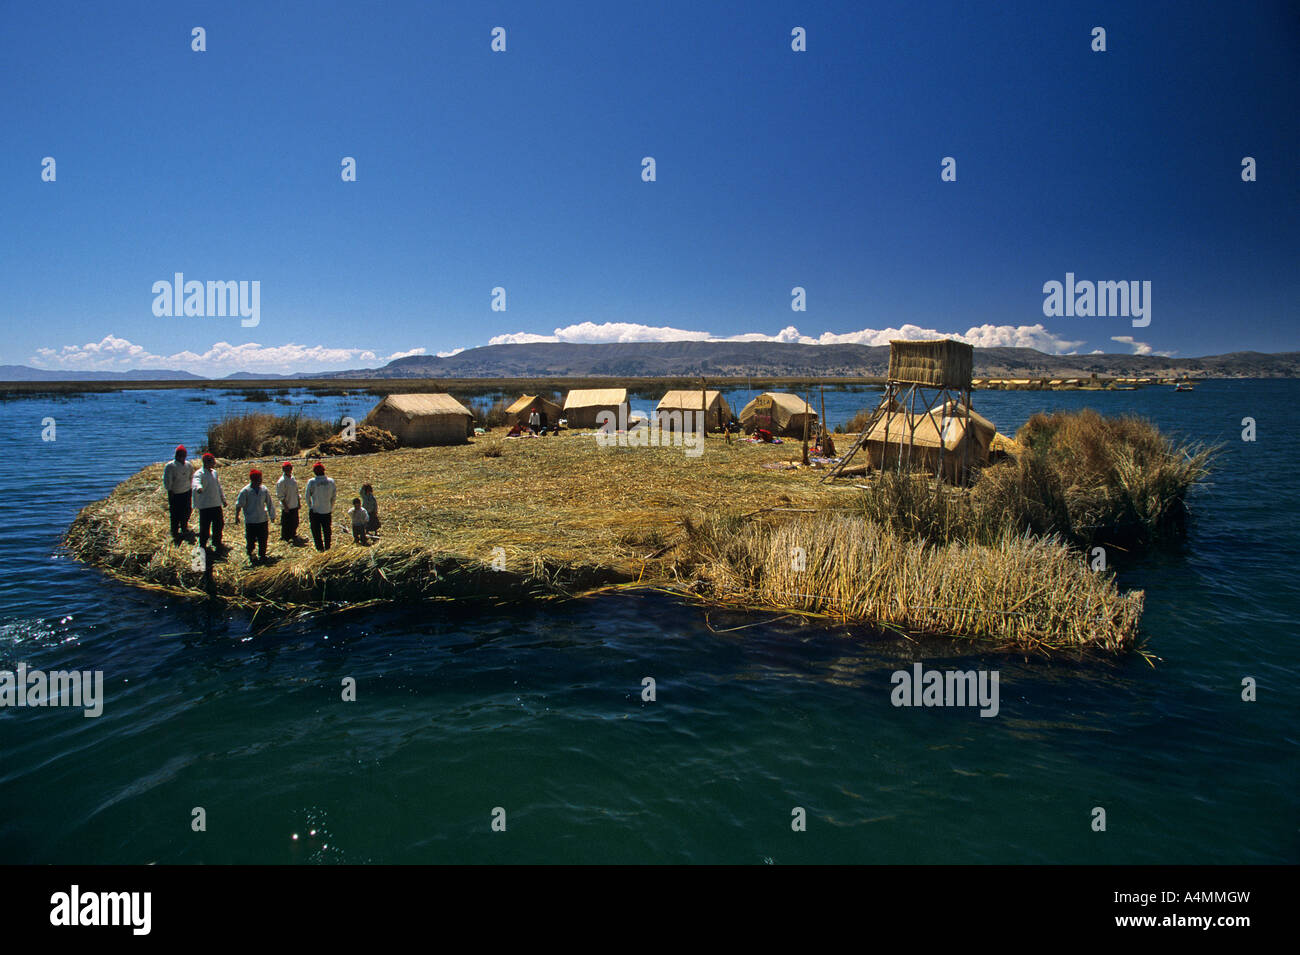 L'île flottante sur le lac Titicaca - Puno (Pérou). Ile flottante sur le lac Titicaca - Puno (Pérou). Banque D'Images